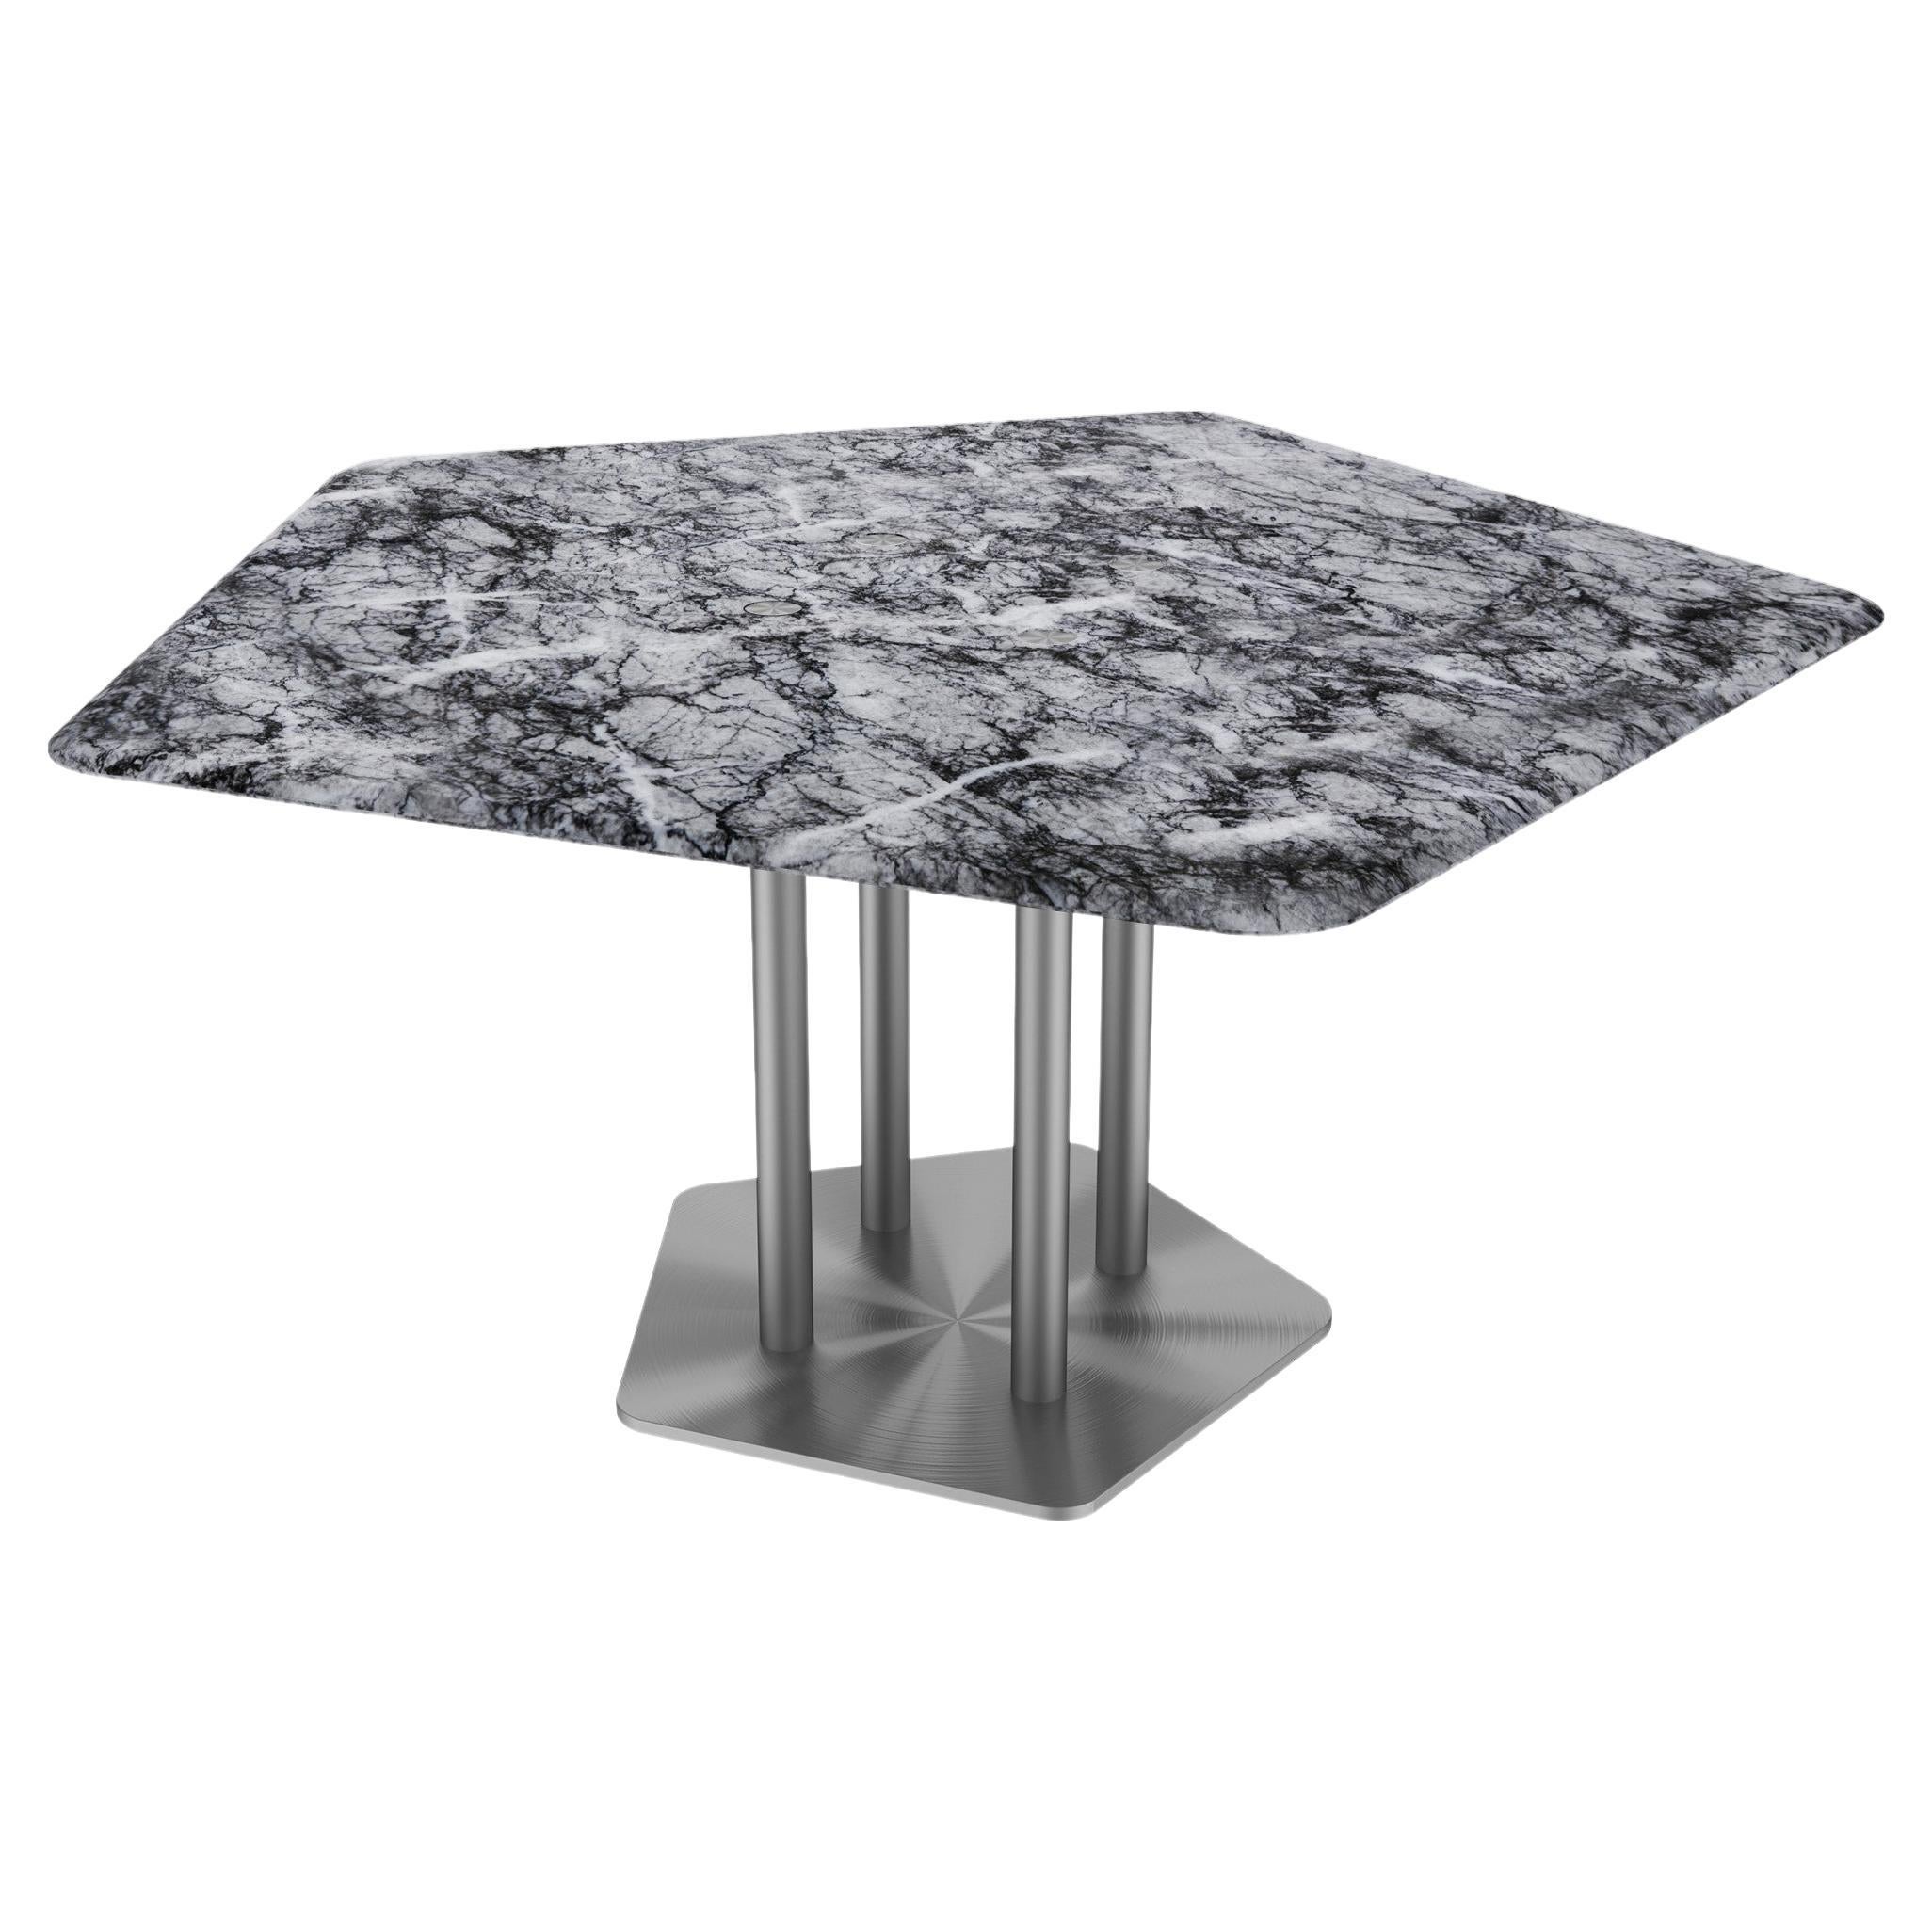 Table de salle à manger NORDST ELI, marbre gris Rain italien, design moderne danois, nouveau